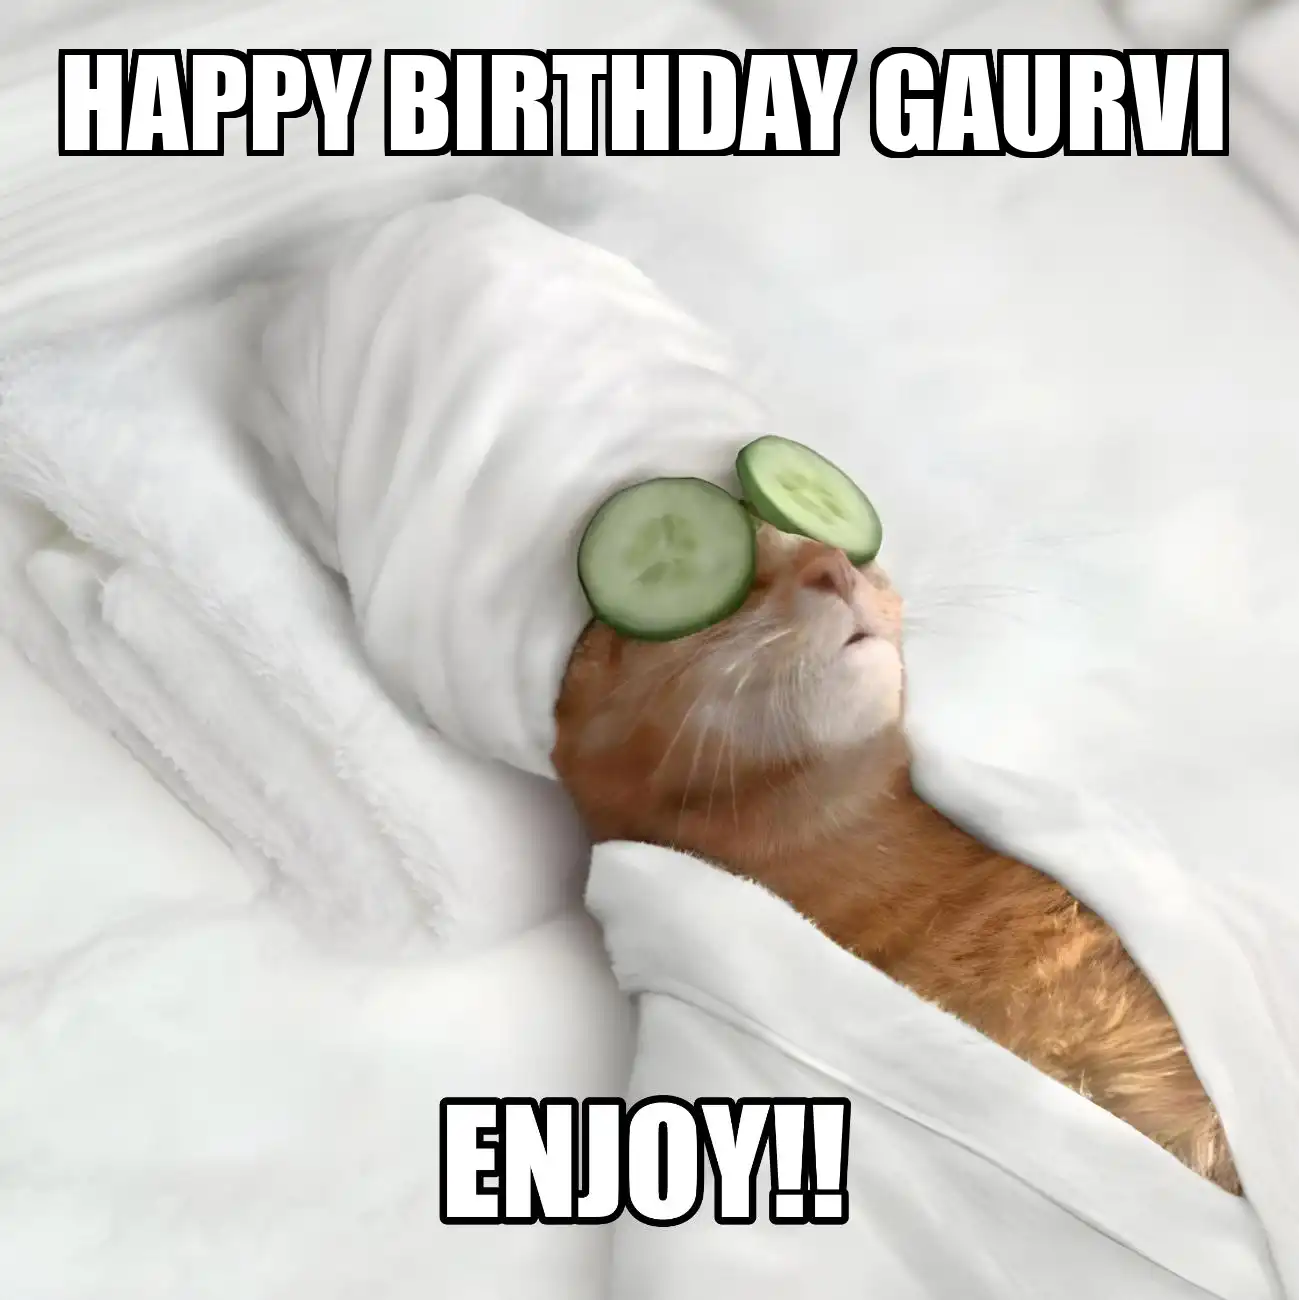 Happy Birthday Gaurvi Enjoy Cat Meme